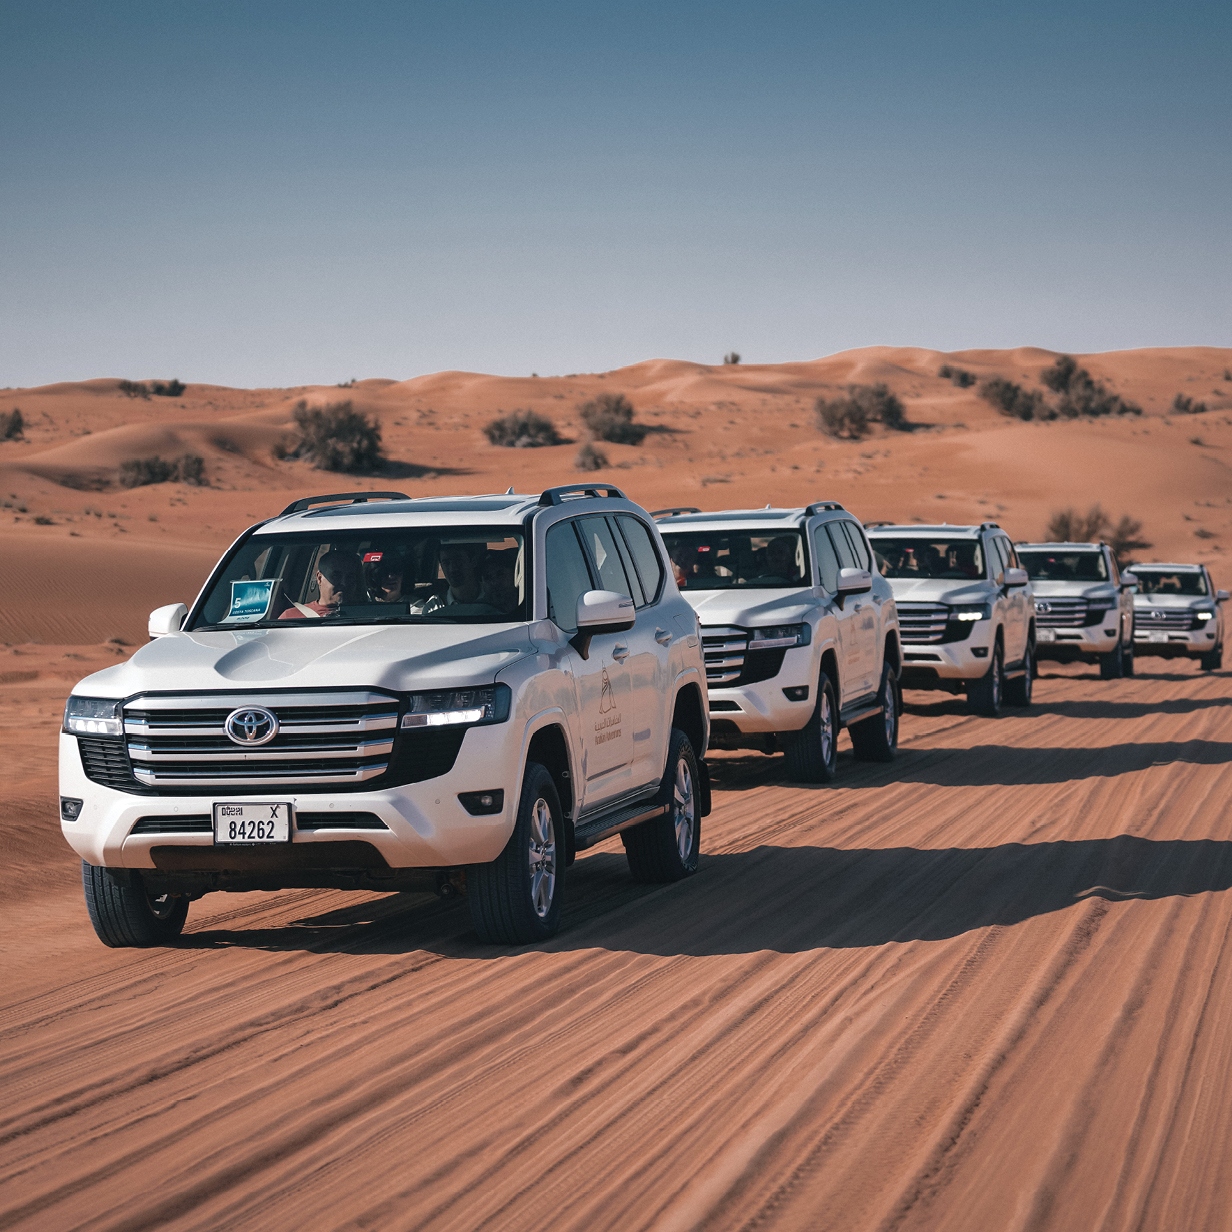 Evening Desert Safari in Dubai - Shared Vehicle, , large